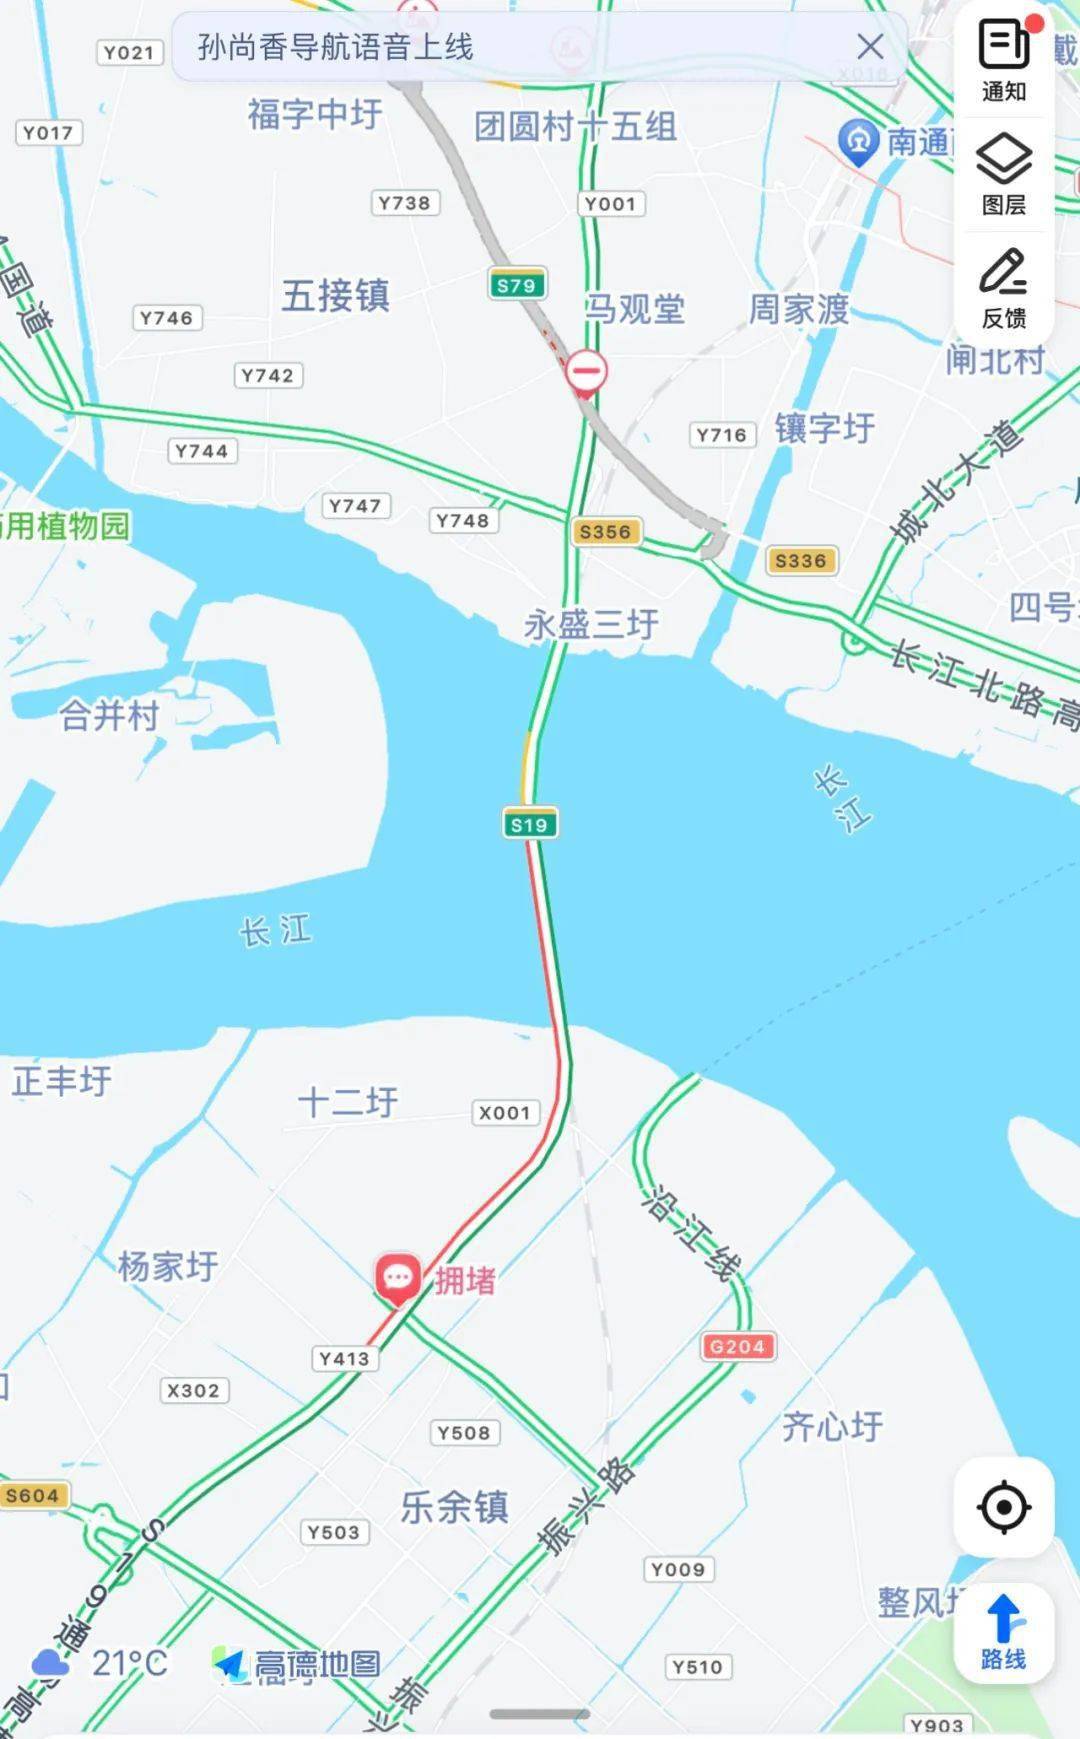 沪苏通大桥路况崇启大桥路况交通拥堵预警一,路段预警——重点路段